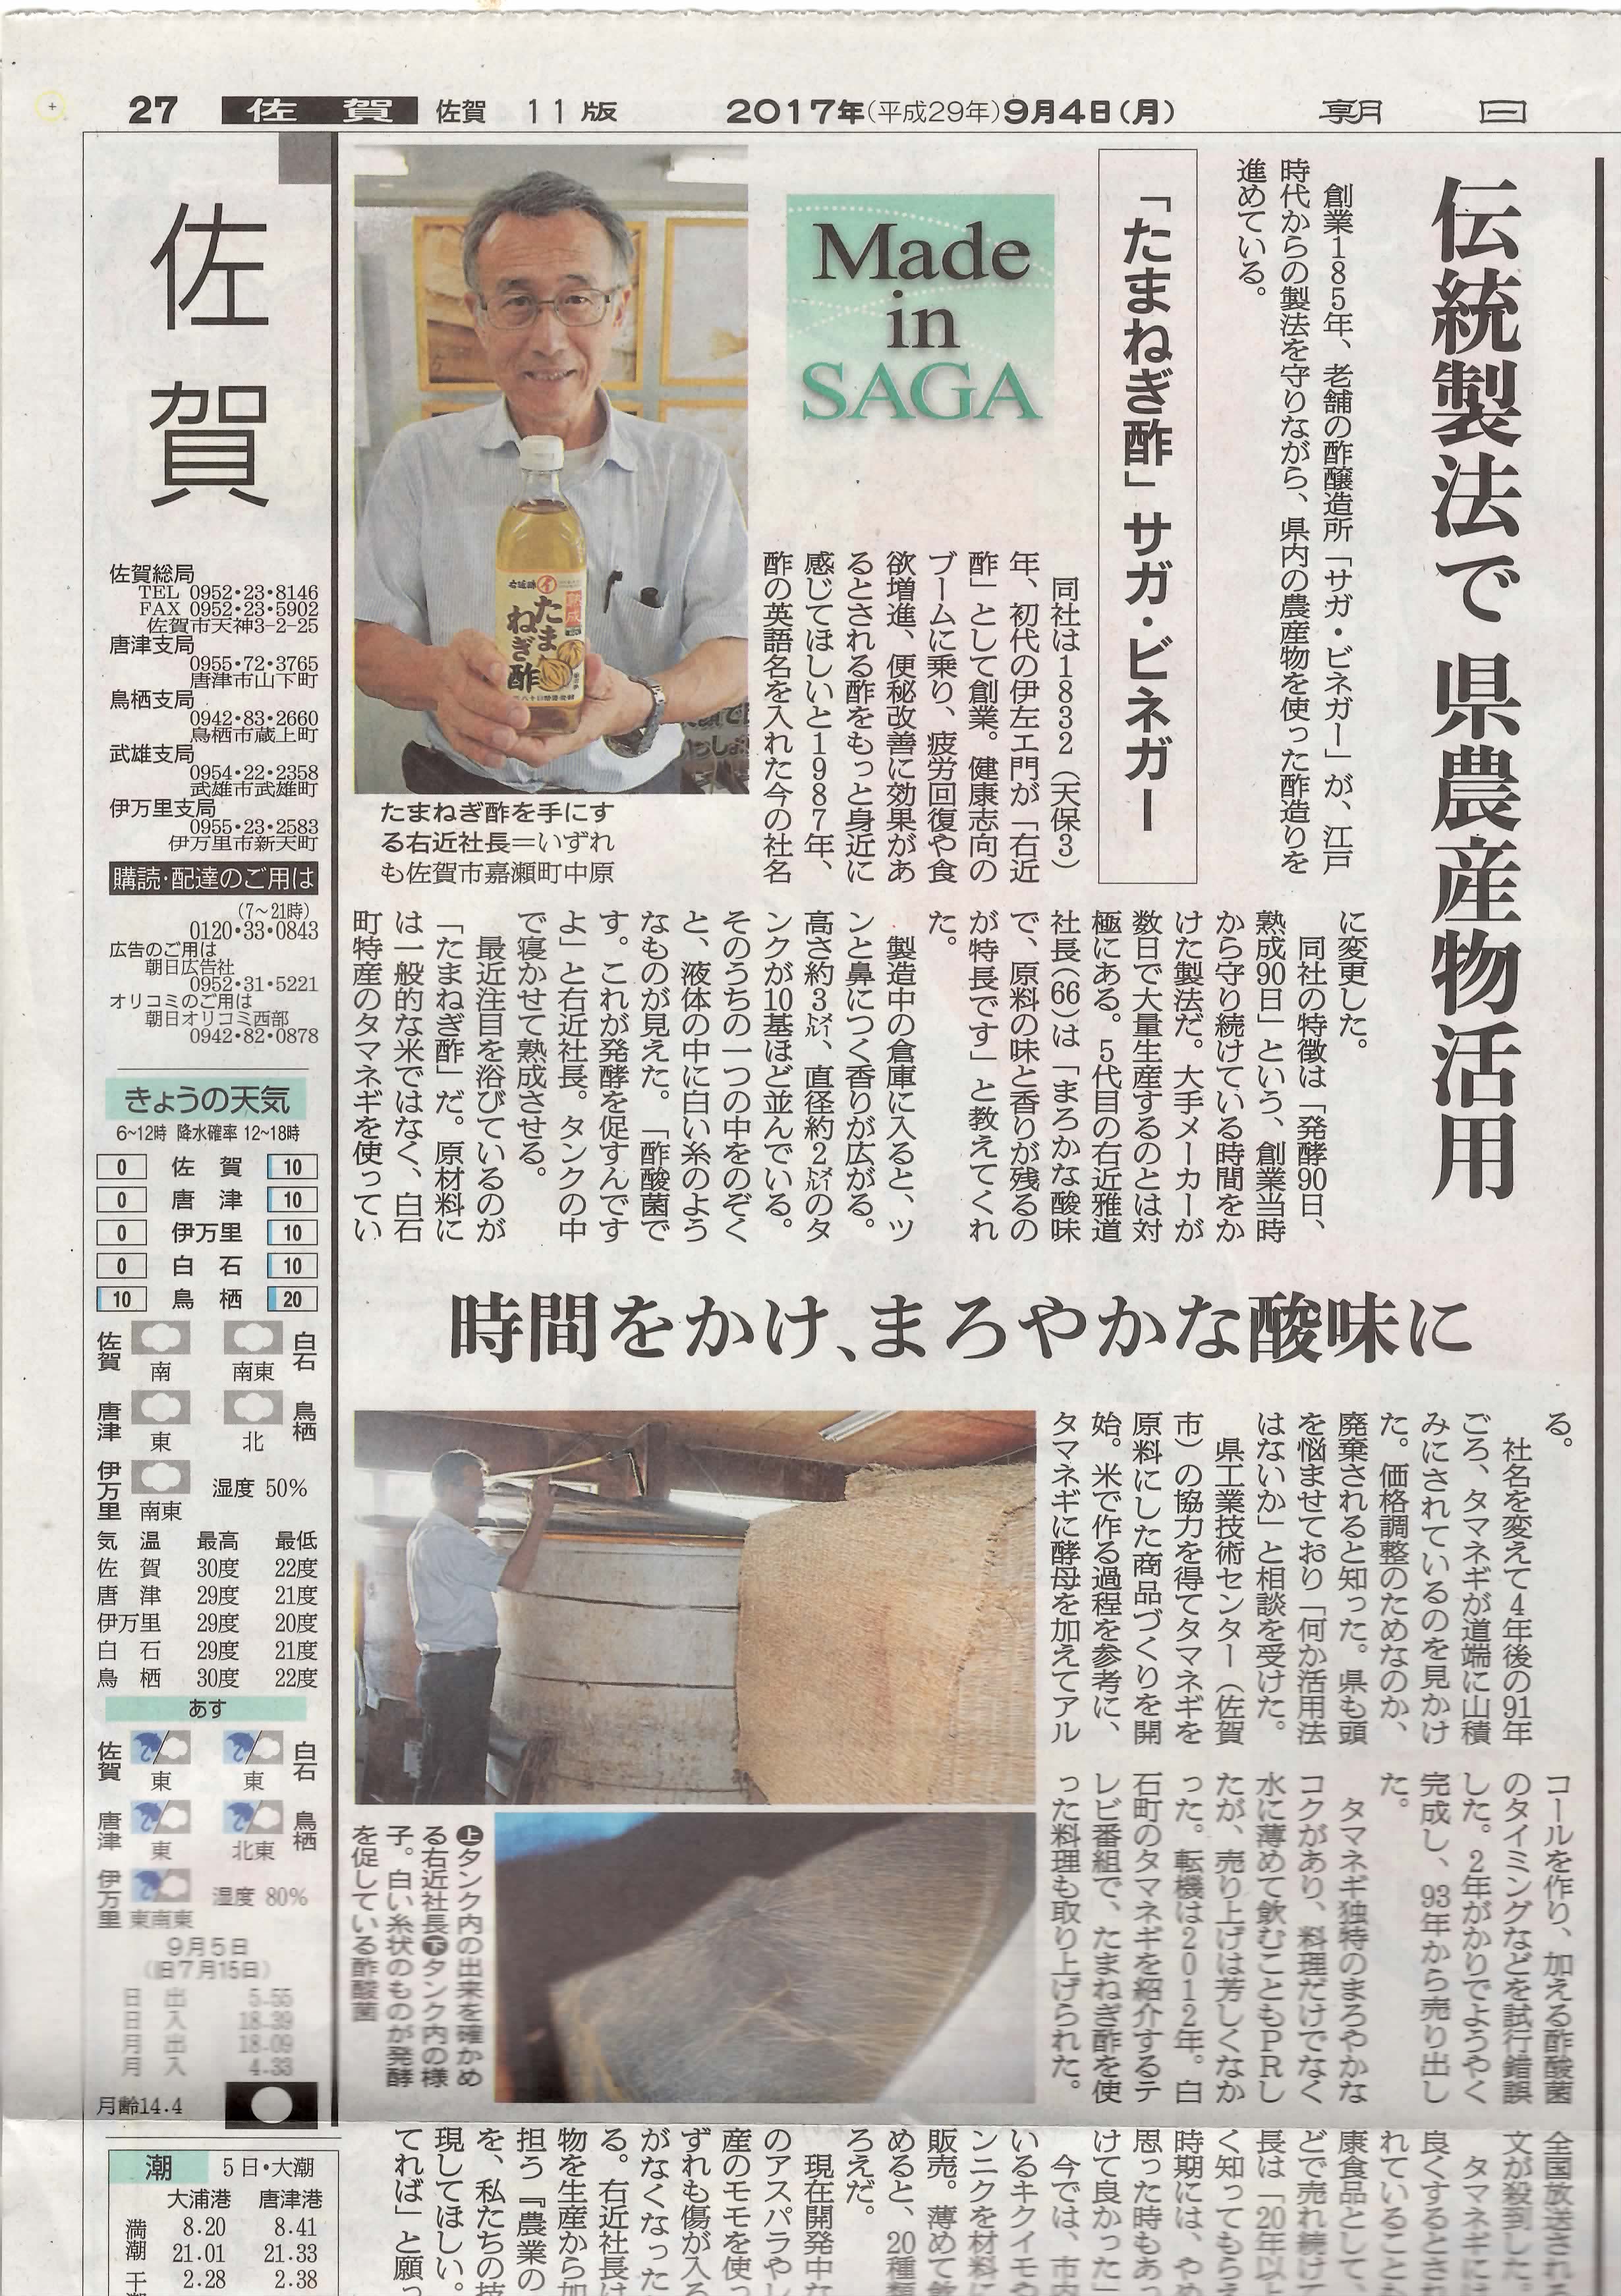 朝日新聞社「伝統製法で県産物活用」記事掲載